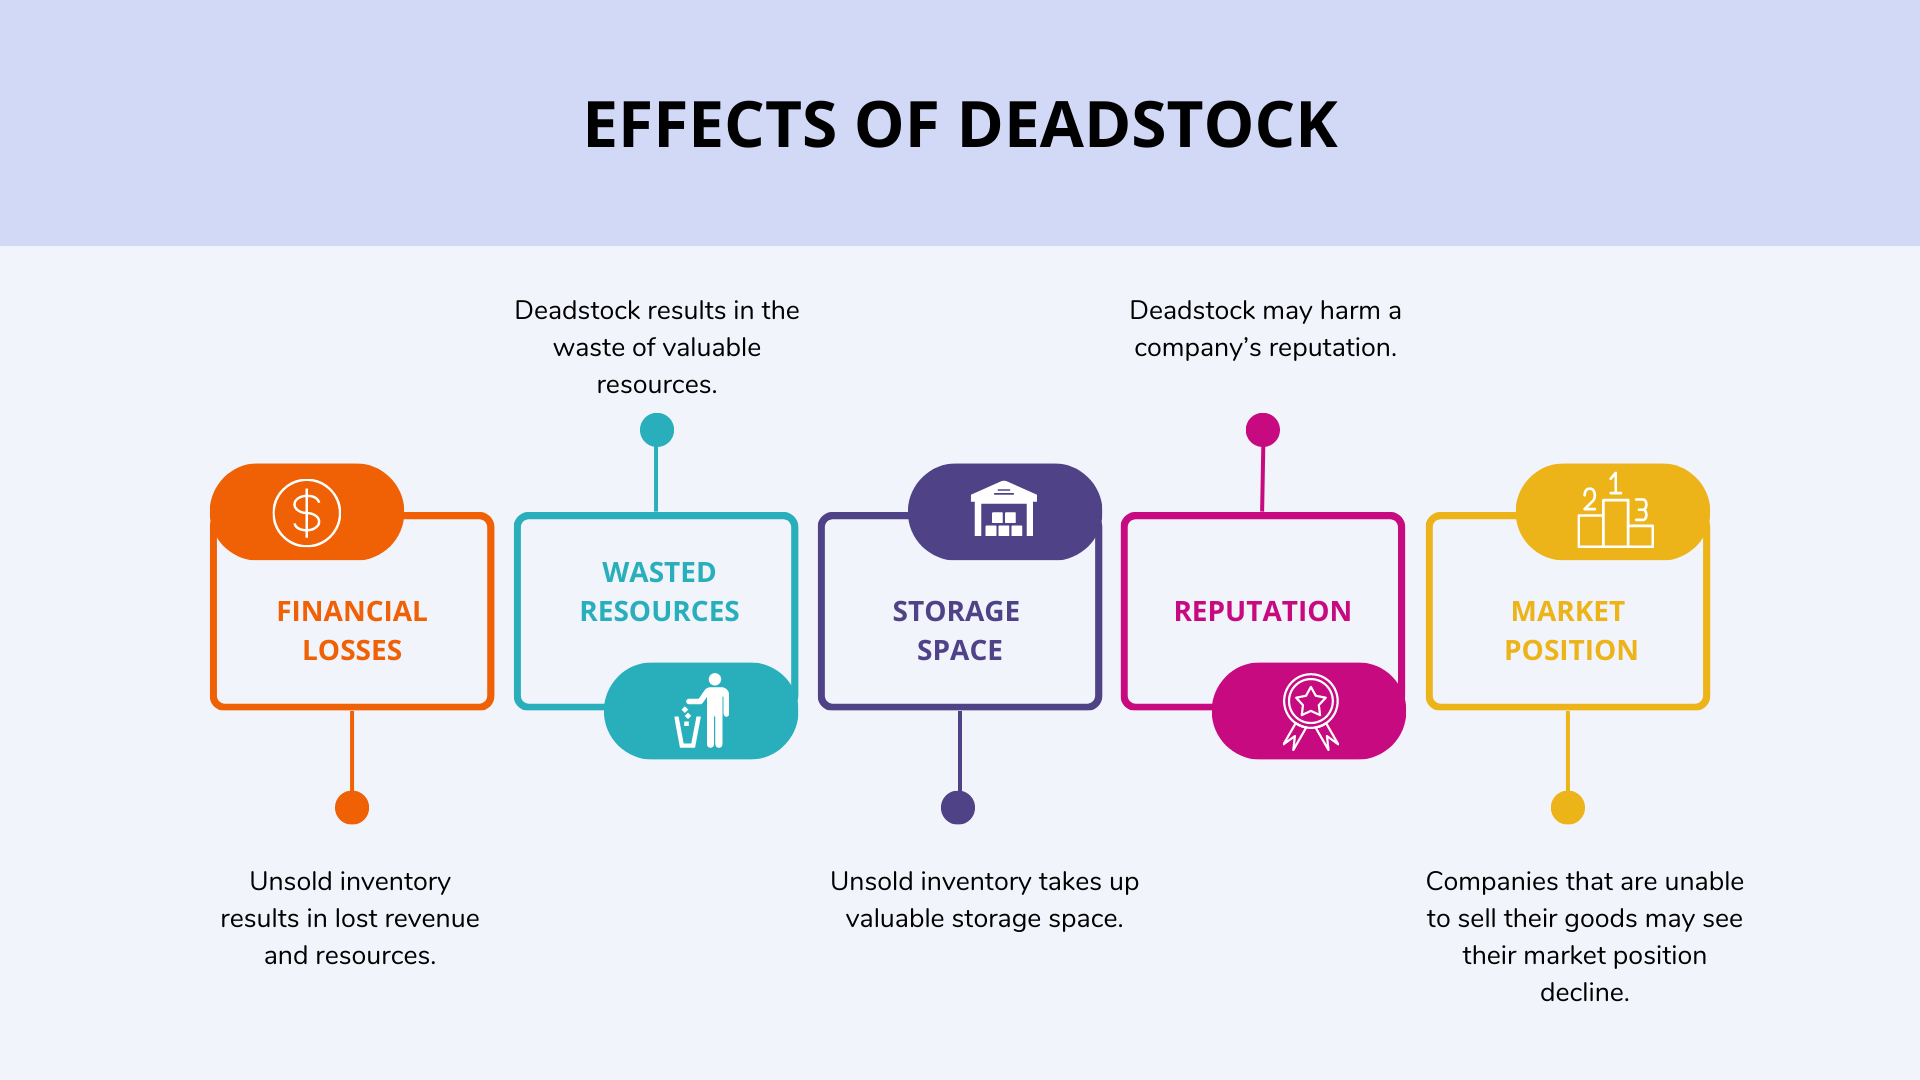 Effects of deadstock